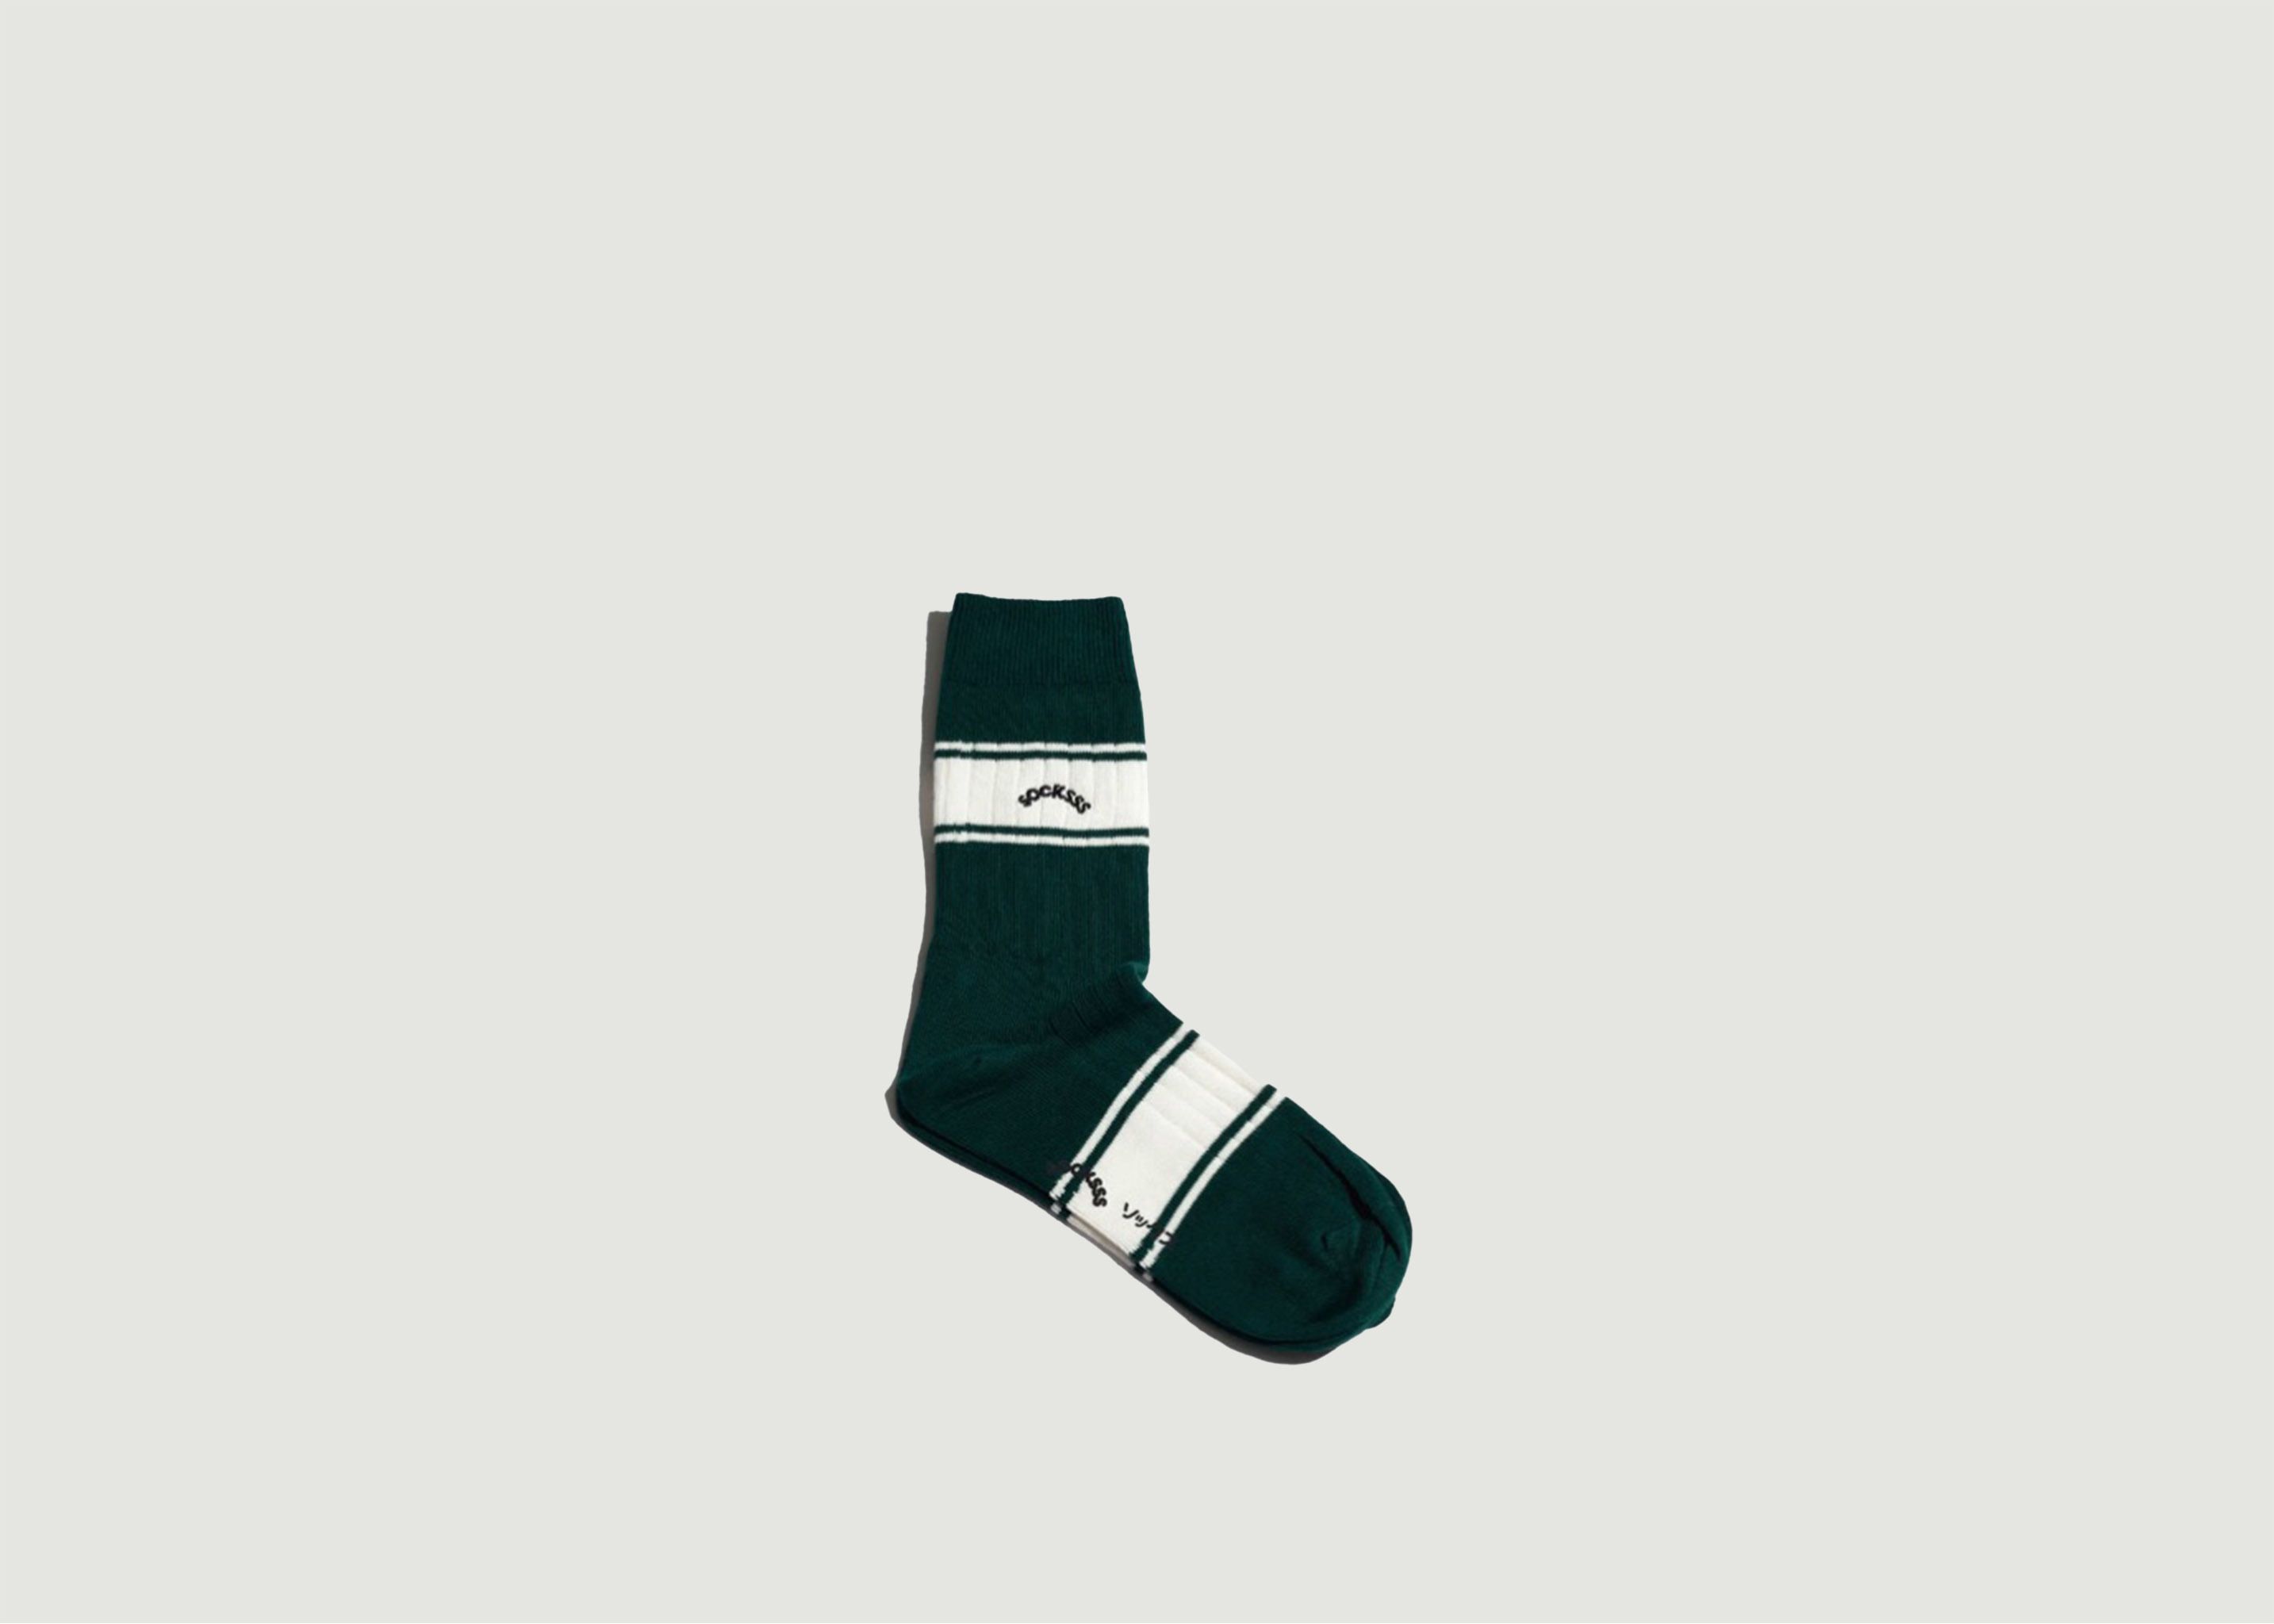 Fenway Park Socken aus Bio-Baumwolle - Socksss